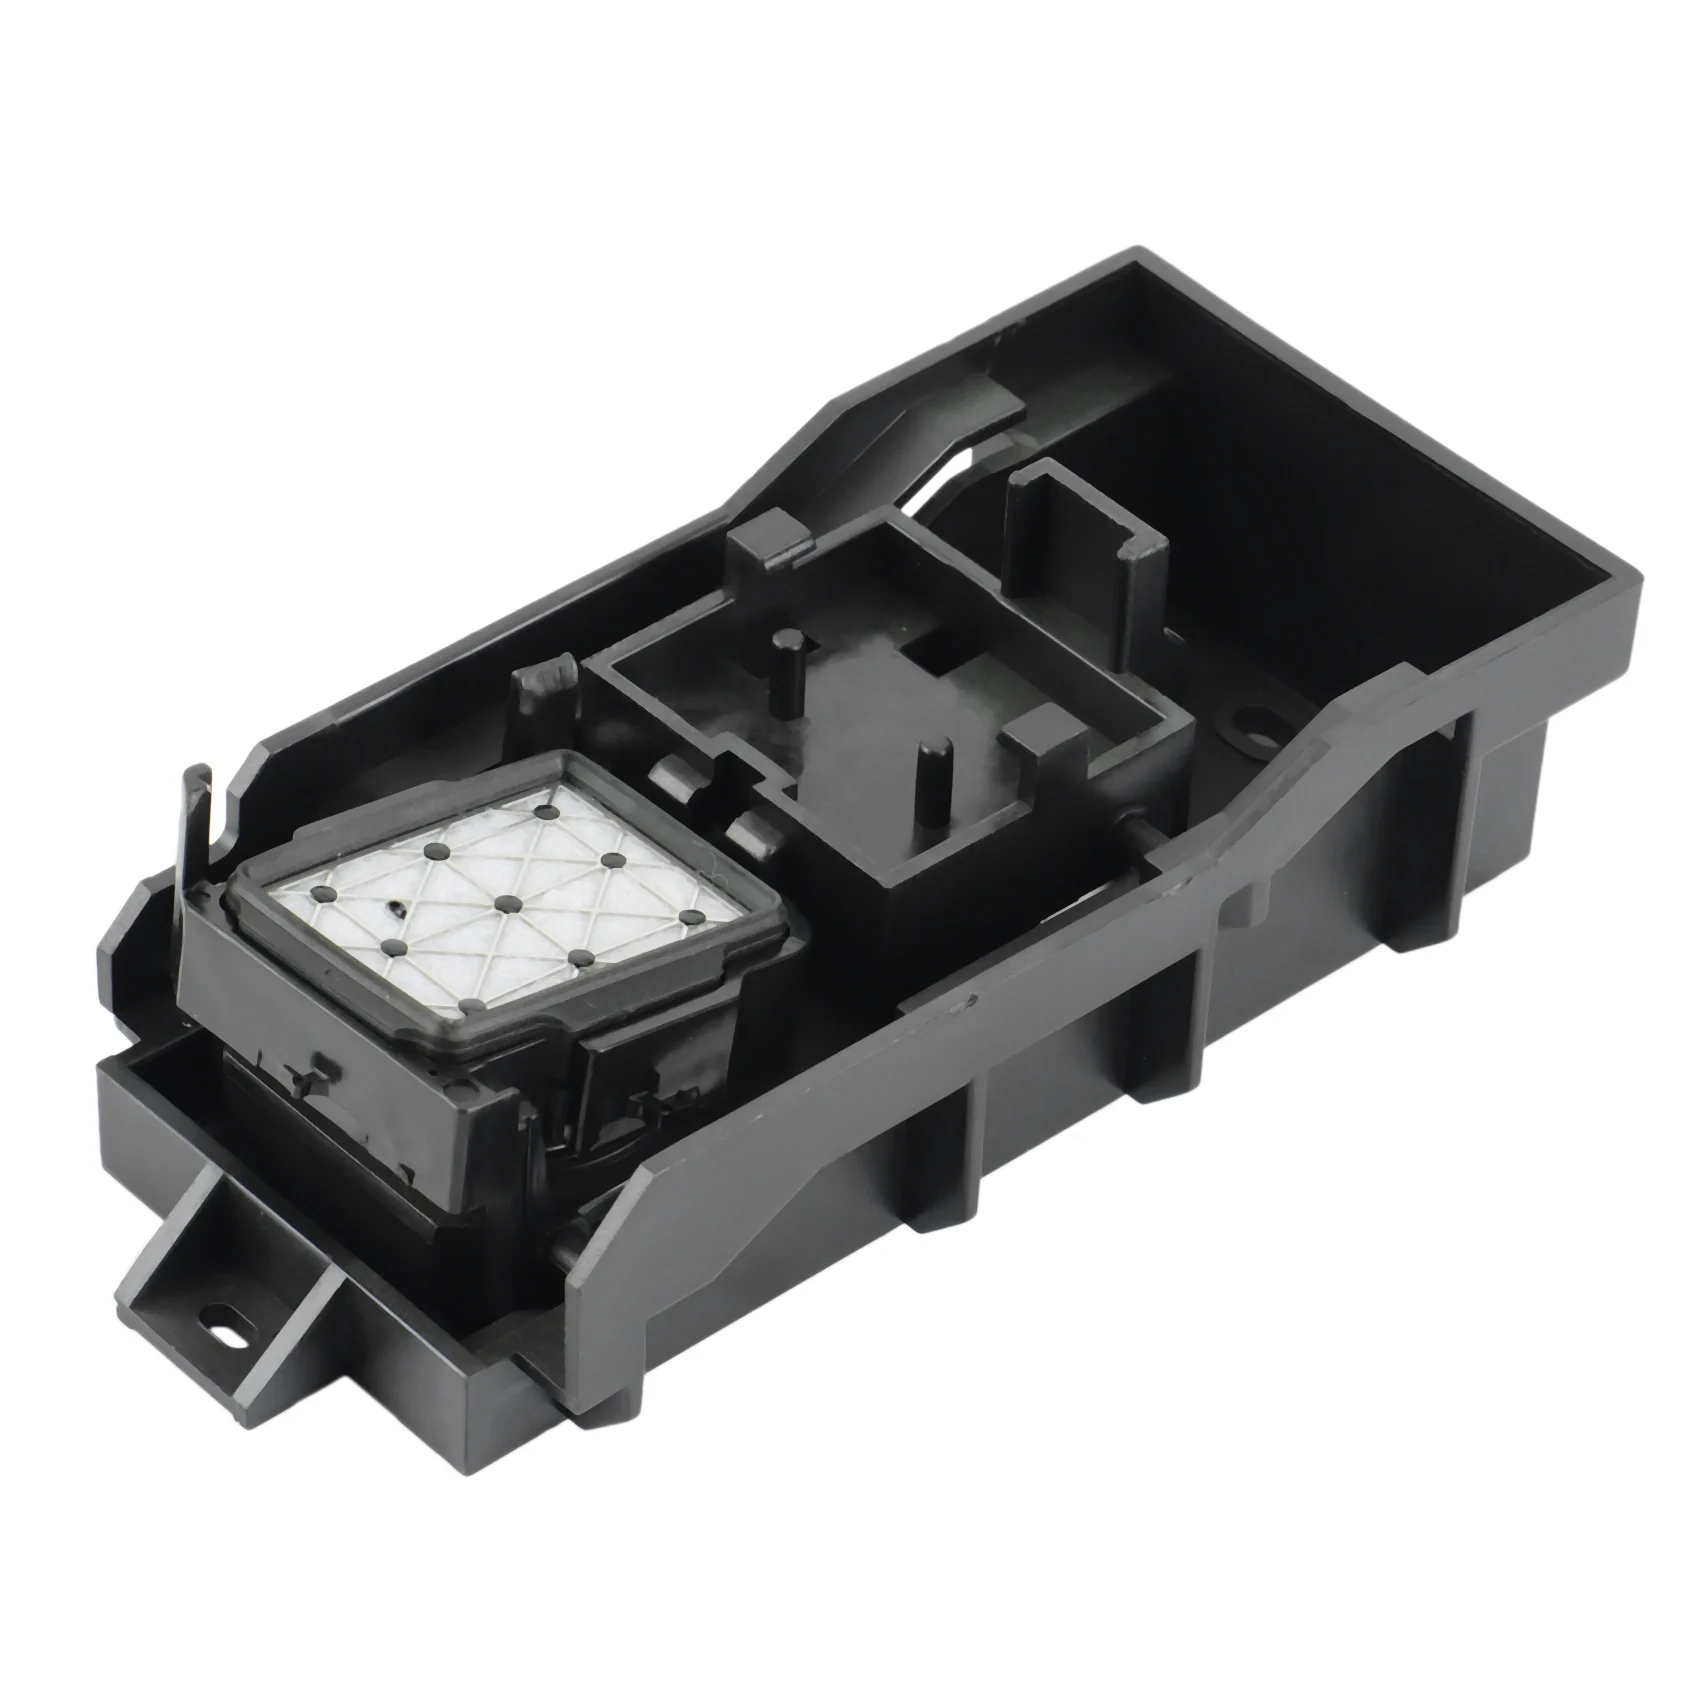 

Плоттер для струйного принтера Mimaki JV33 JV5 CJV30, укупорочная станция в сборе для Epson Dx5 Dx7, печатающая головка, комплект для чистки печатающей головки B